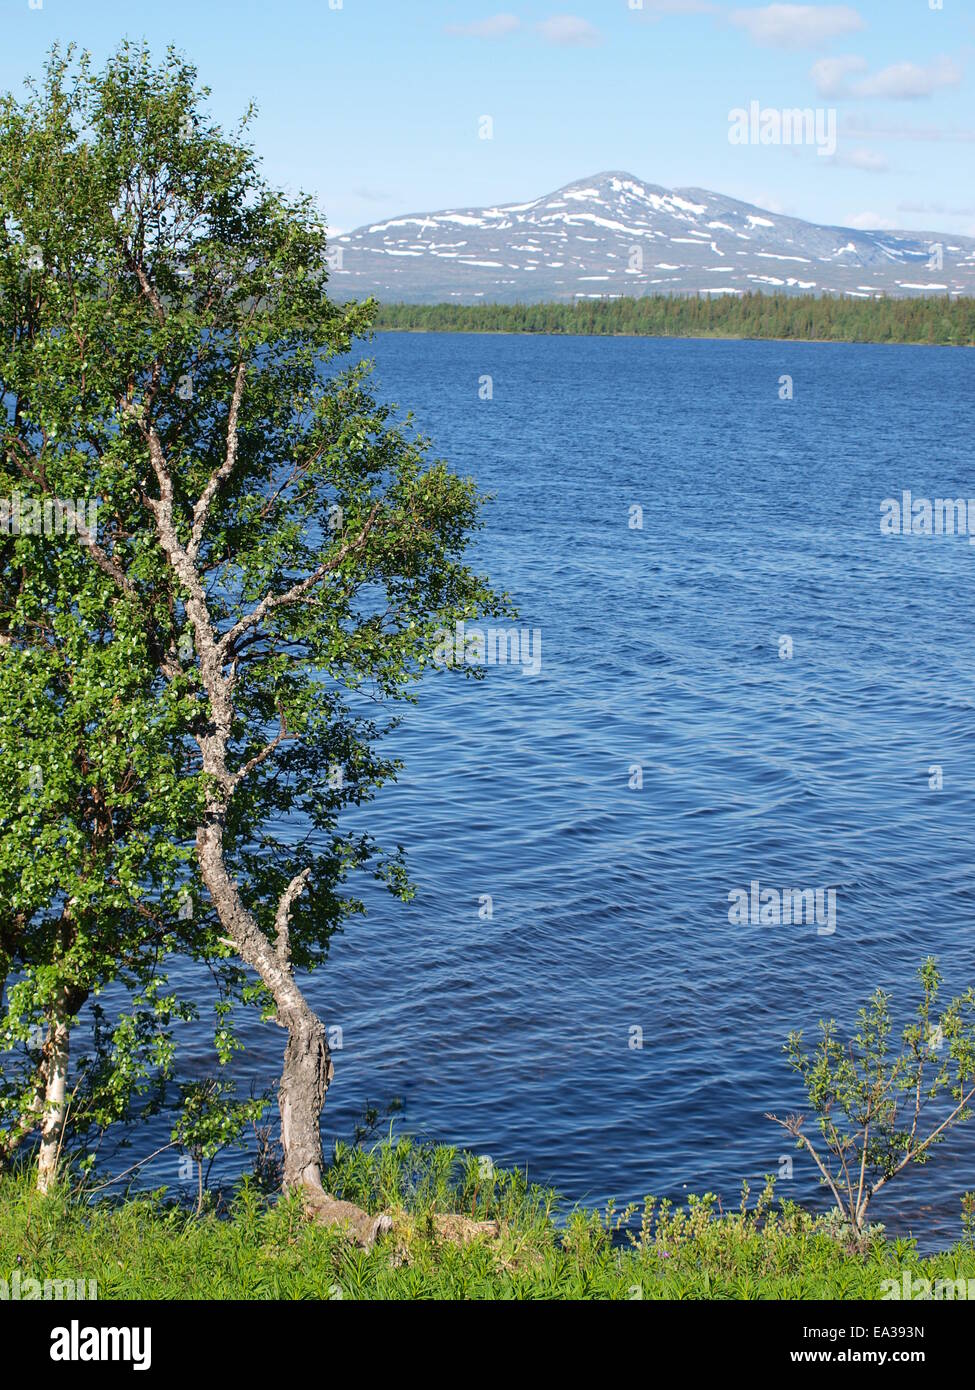 Mountain region between norway andsweden Stock Photo